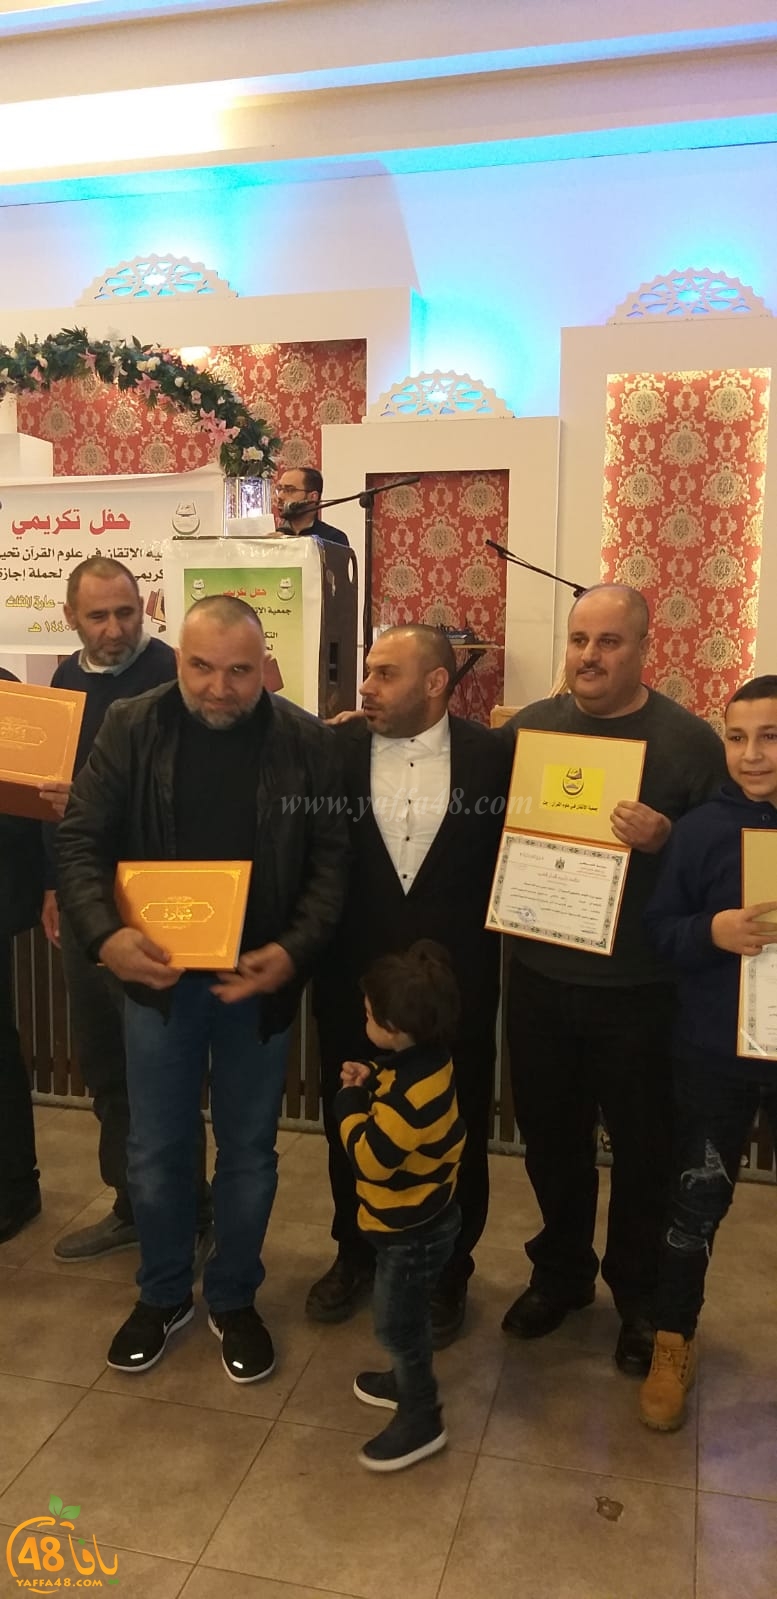  جمعية الزيتونة بالرملة تحتفل بتخريج 11 طالباً مجازاً في قراءة القرآن الكريم